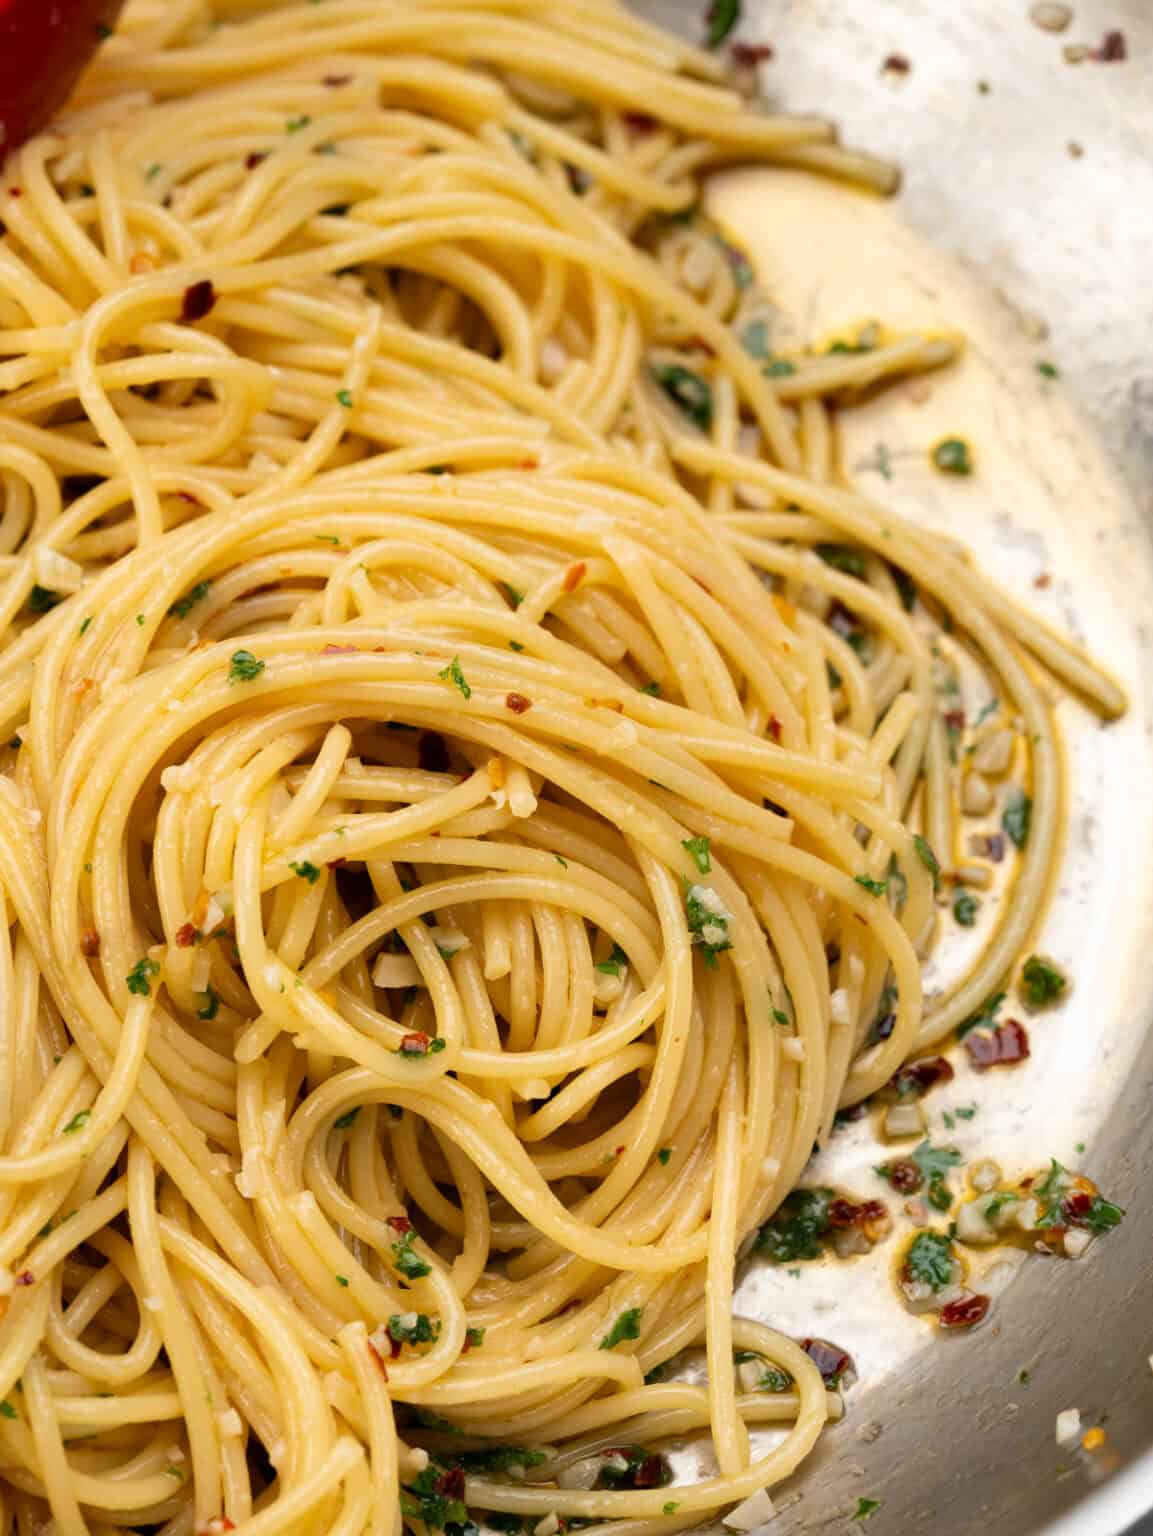 Spaghetti Aglio e Olio - The flavours of kitchen